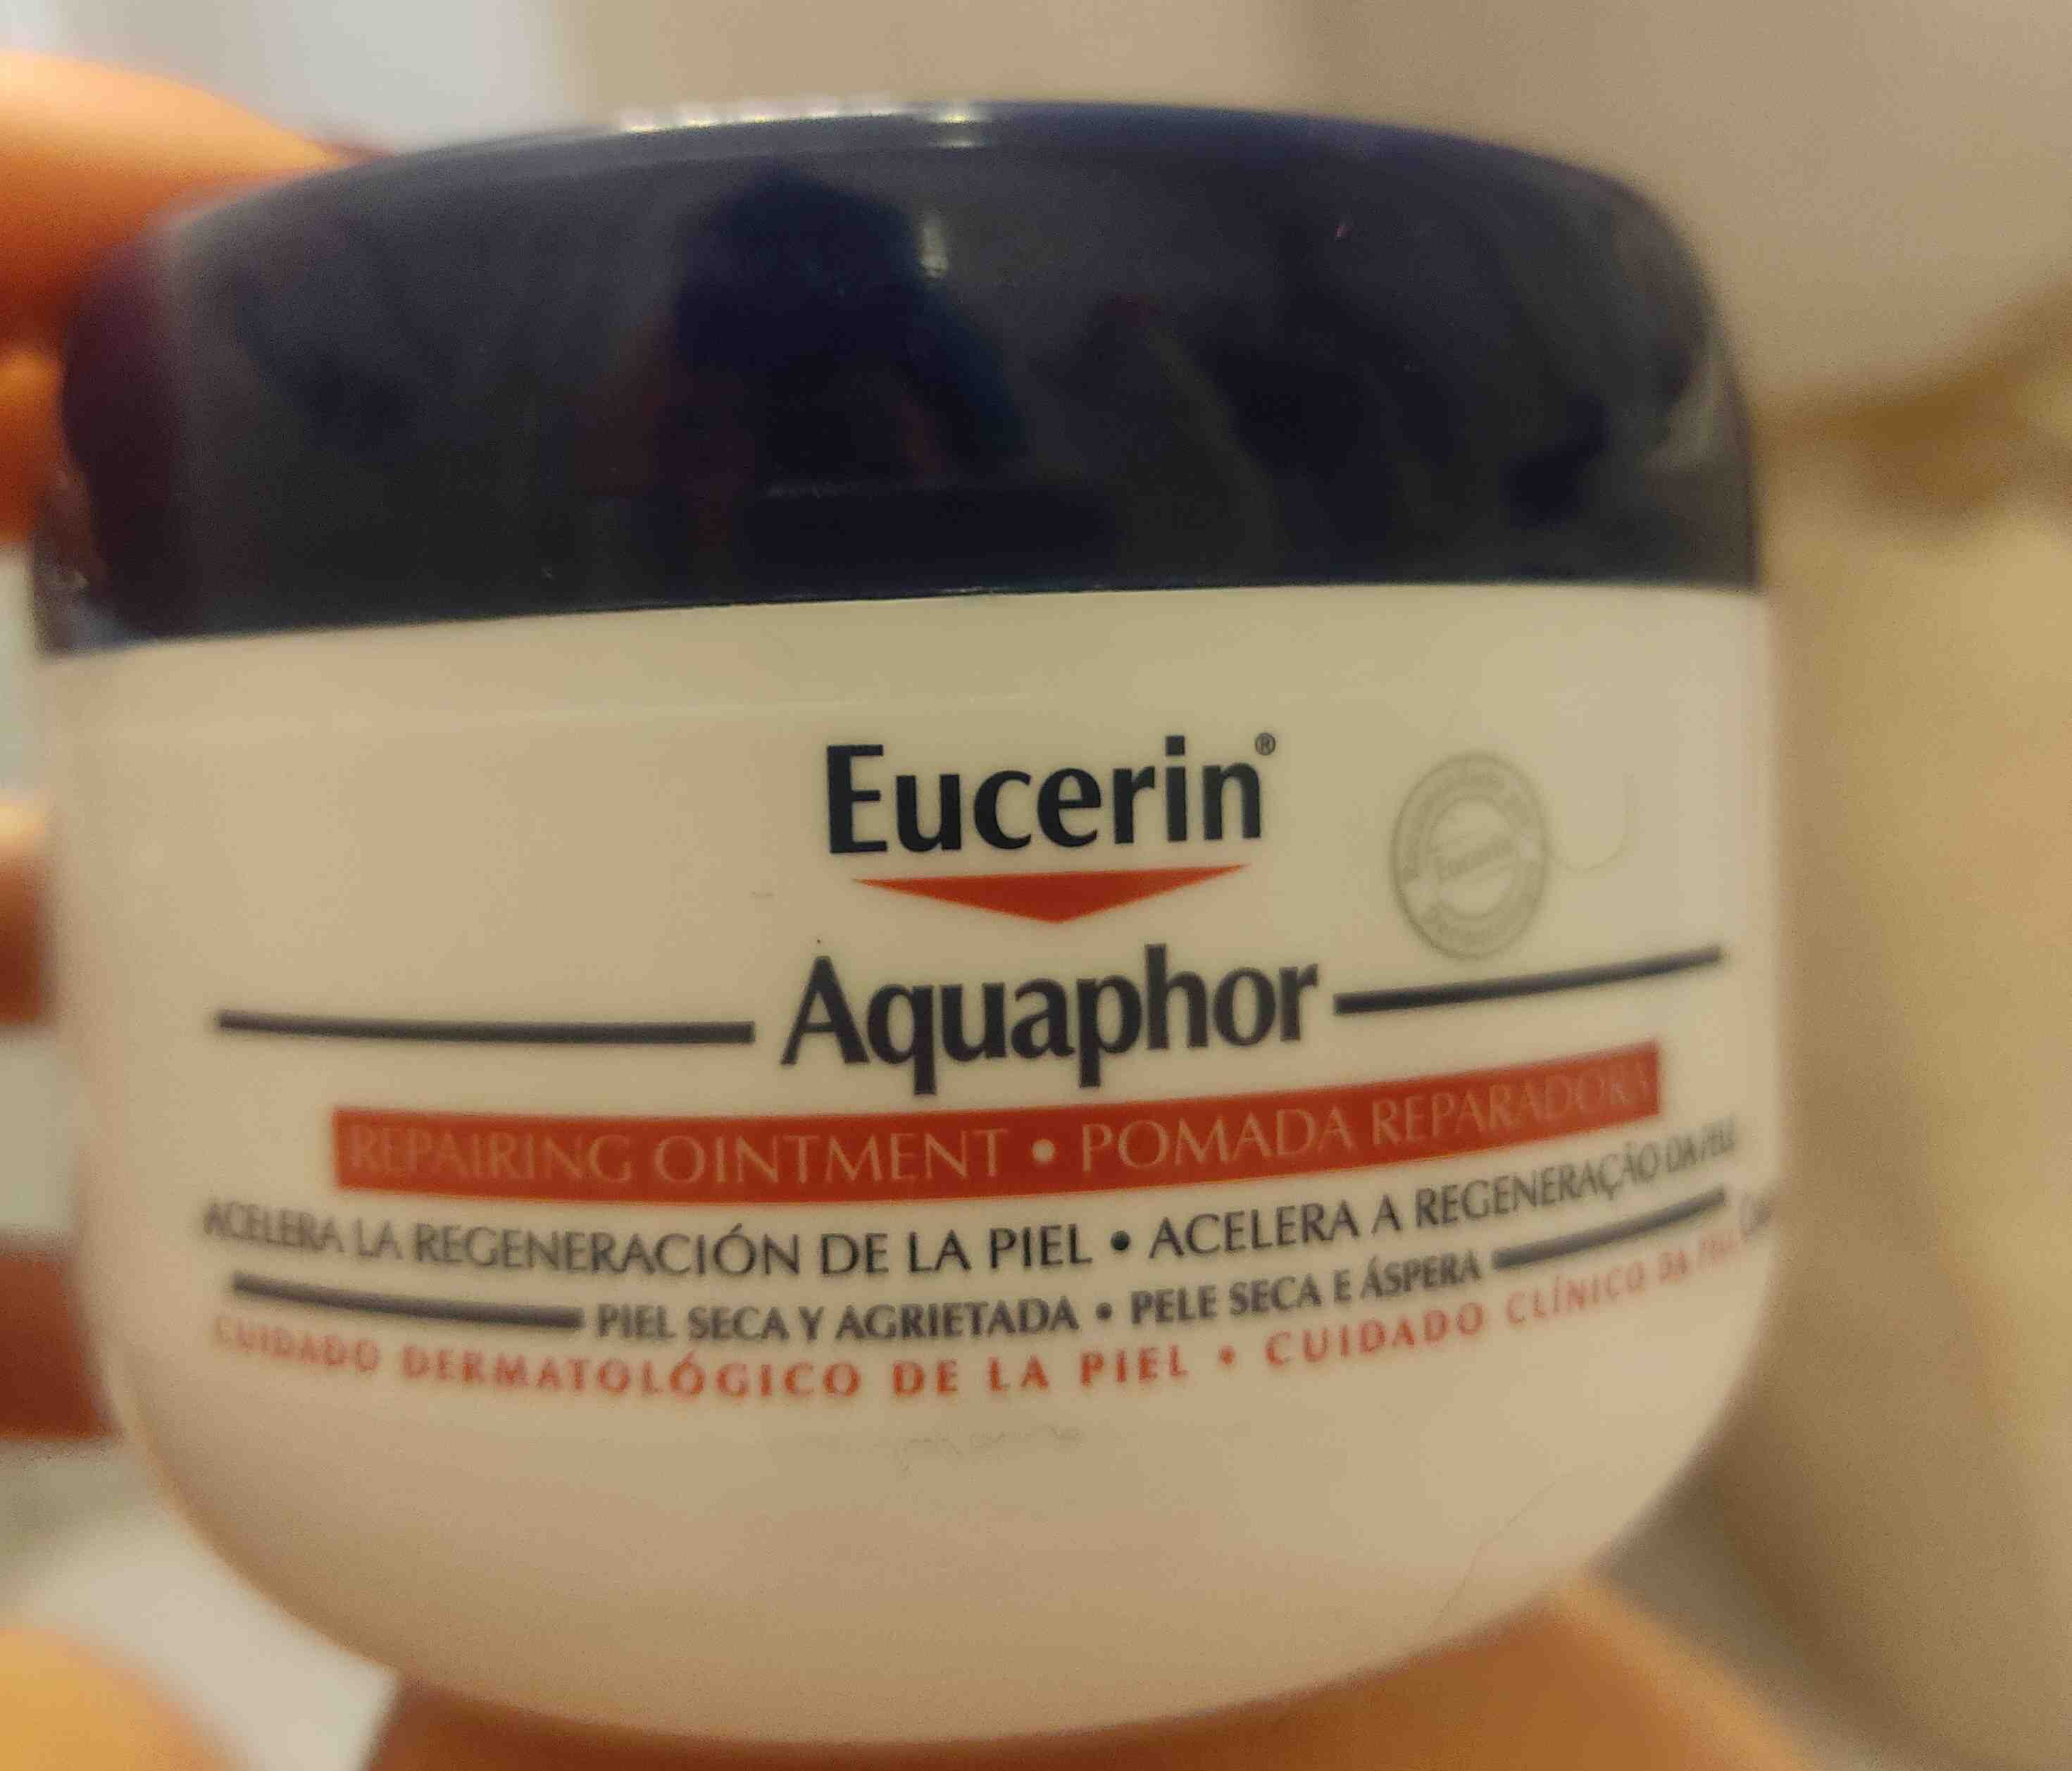 eucerin aquaphor - Product - en